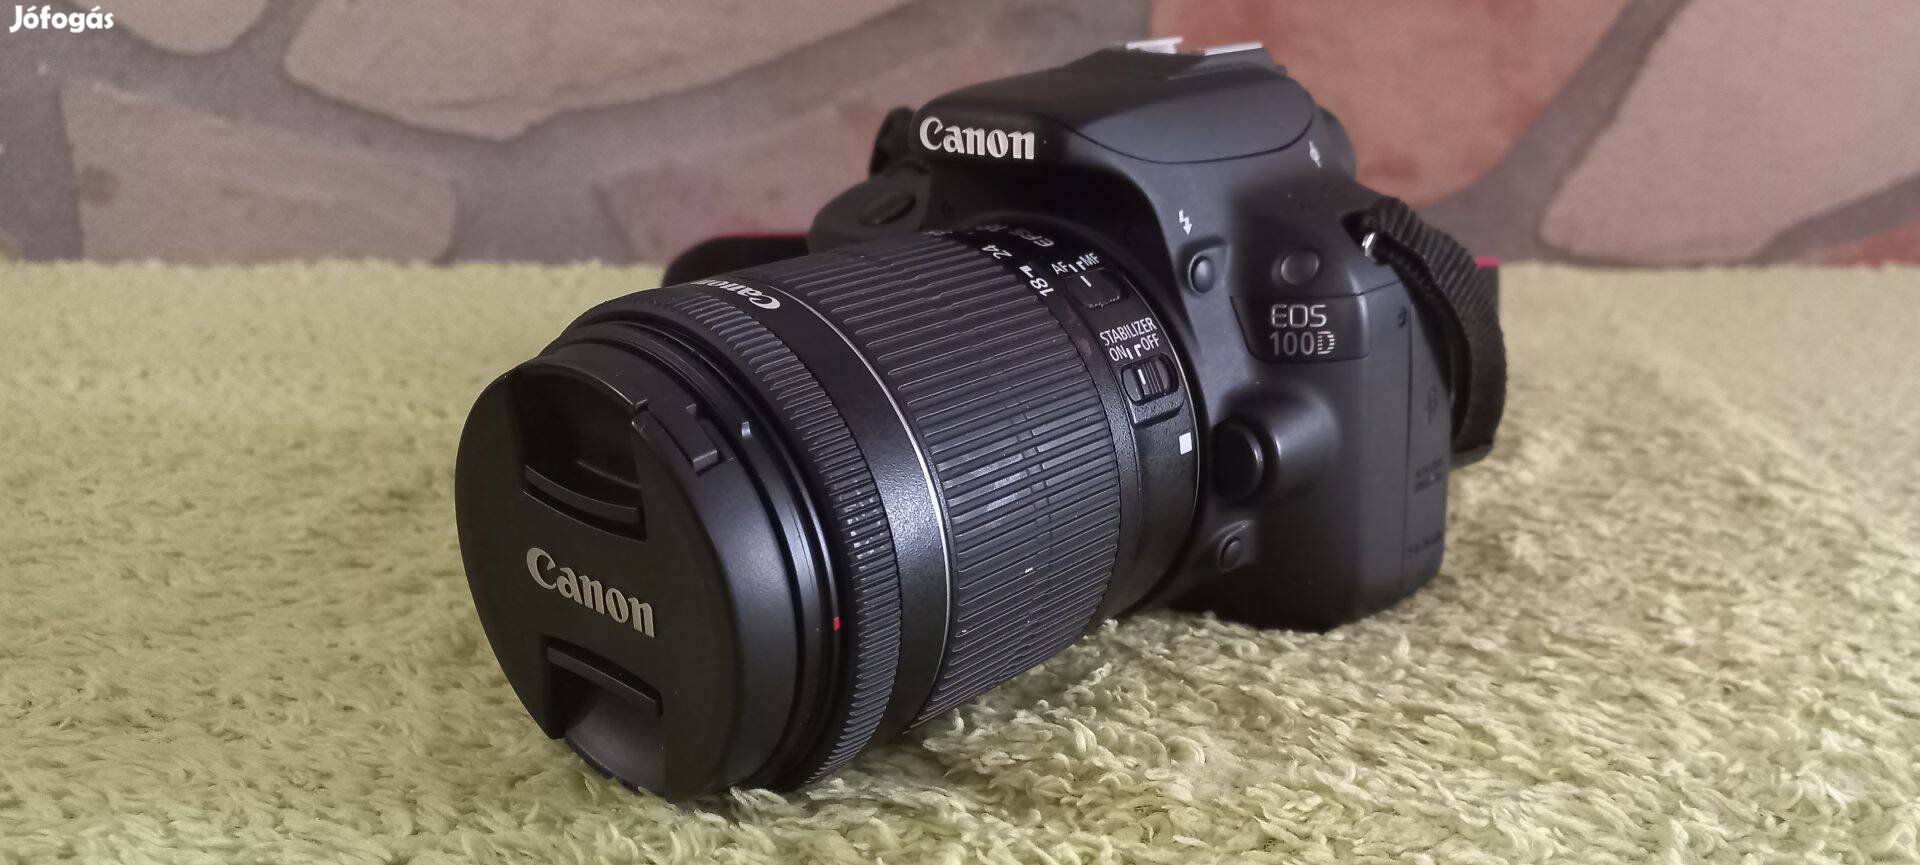 Canon Eos 100D digitális fényképezőgép